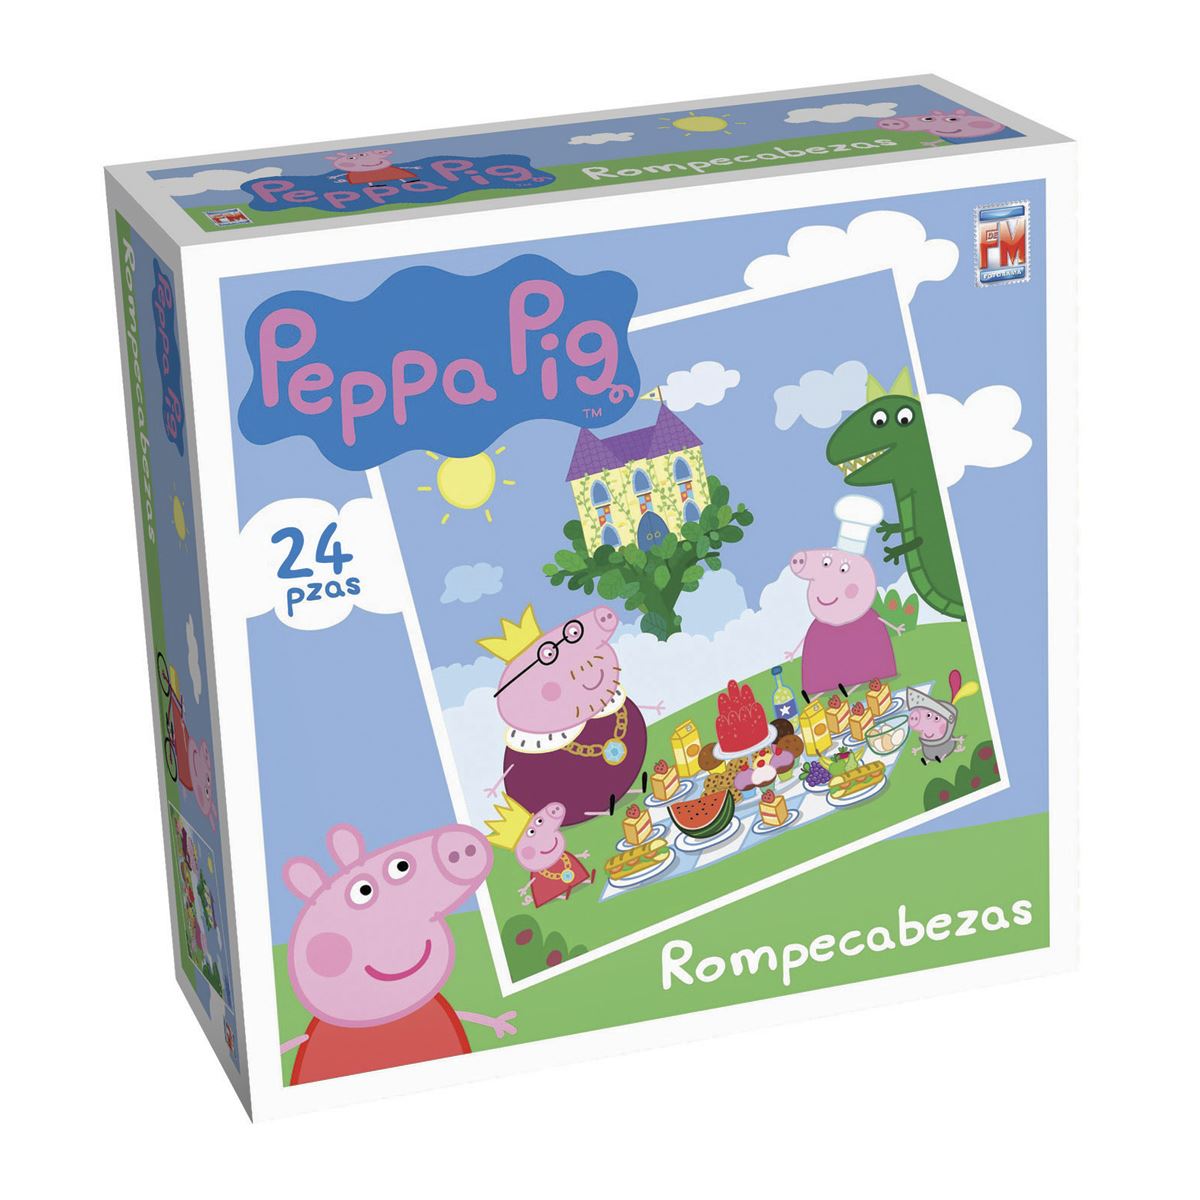 Peppa Pig rompecabezas 24 piezas